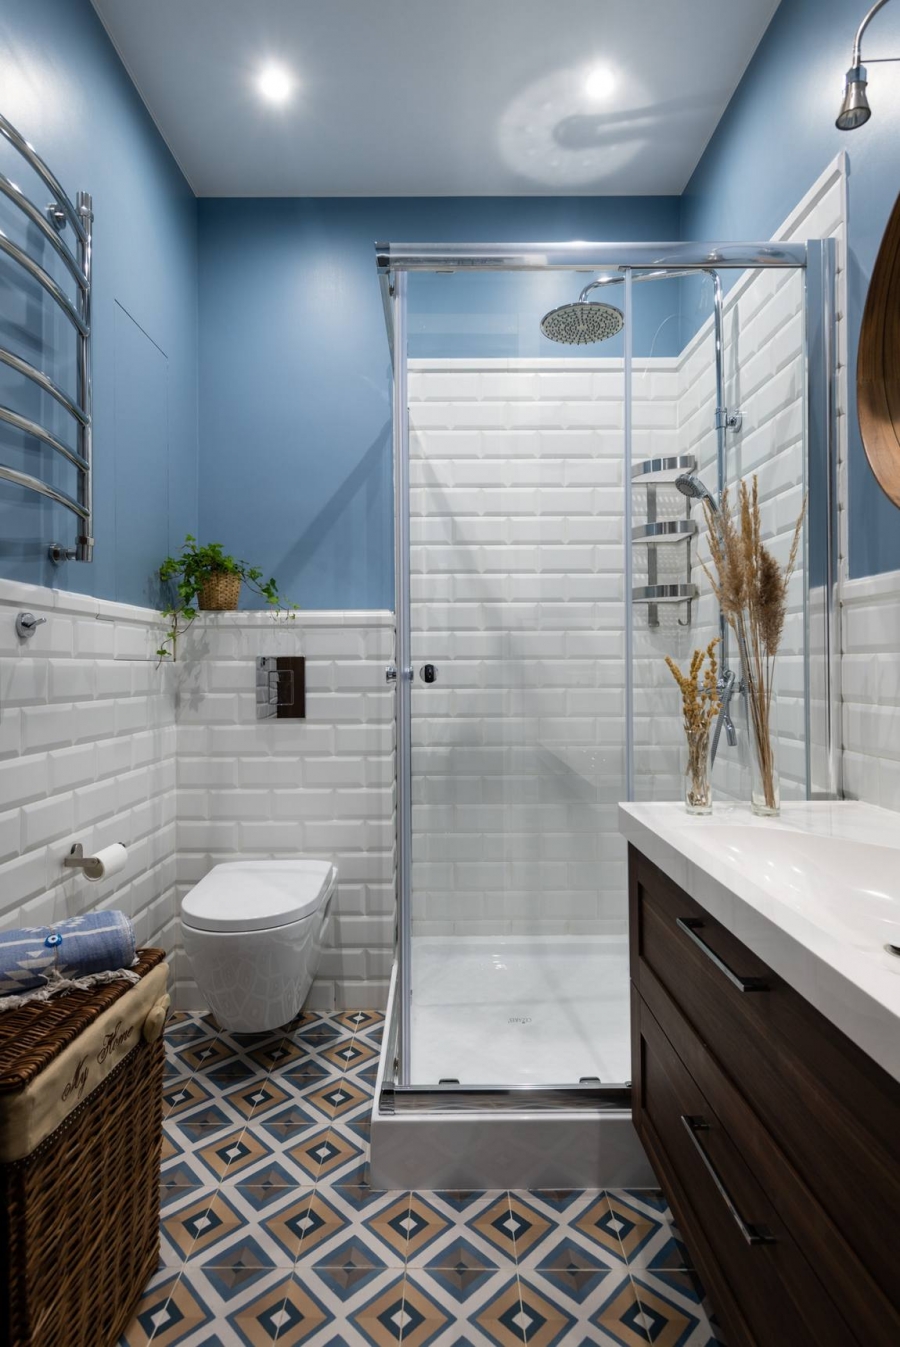 Khu vực phòng tắm và nhà vệ sinh sử dụng gạch lát sàn riêng để tạo điểm nhấn sinh động. Bức tường là sự kết hợp của gam màu trắng - xanh lam dịu mắt.